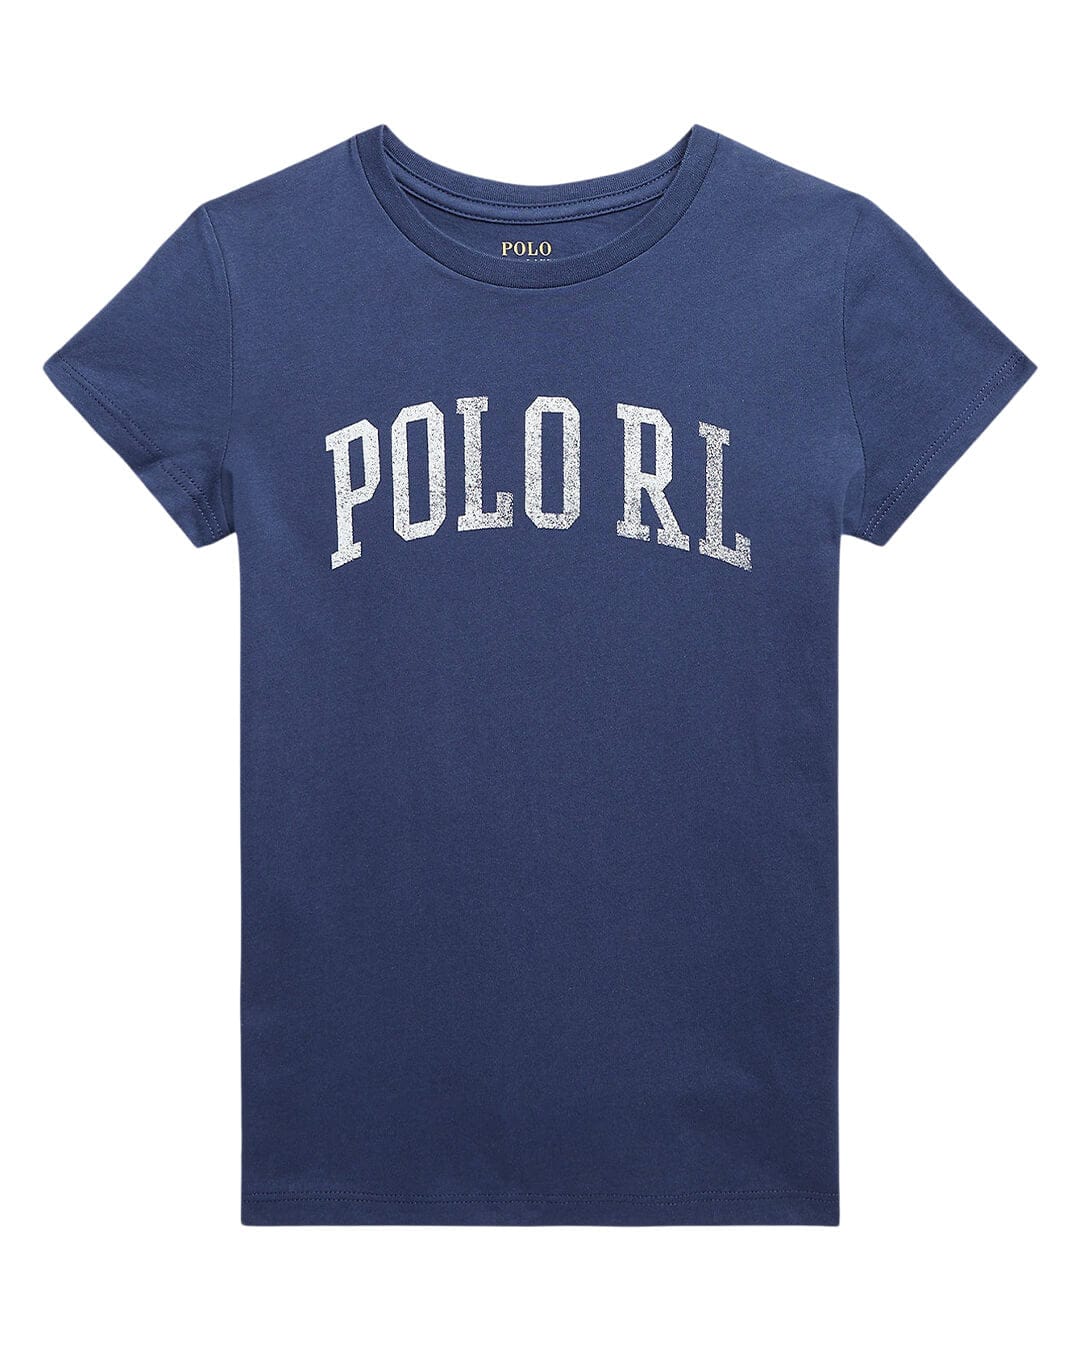 Polo Ralph Lauren T-Shirts Girls Polo Ralph Lauren Short Sleeved Graphic Blue T-Shirt